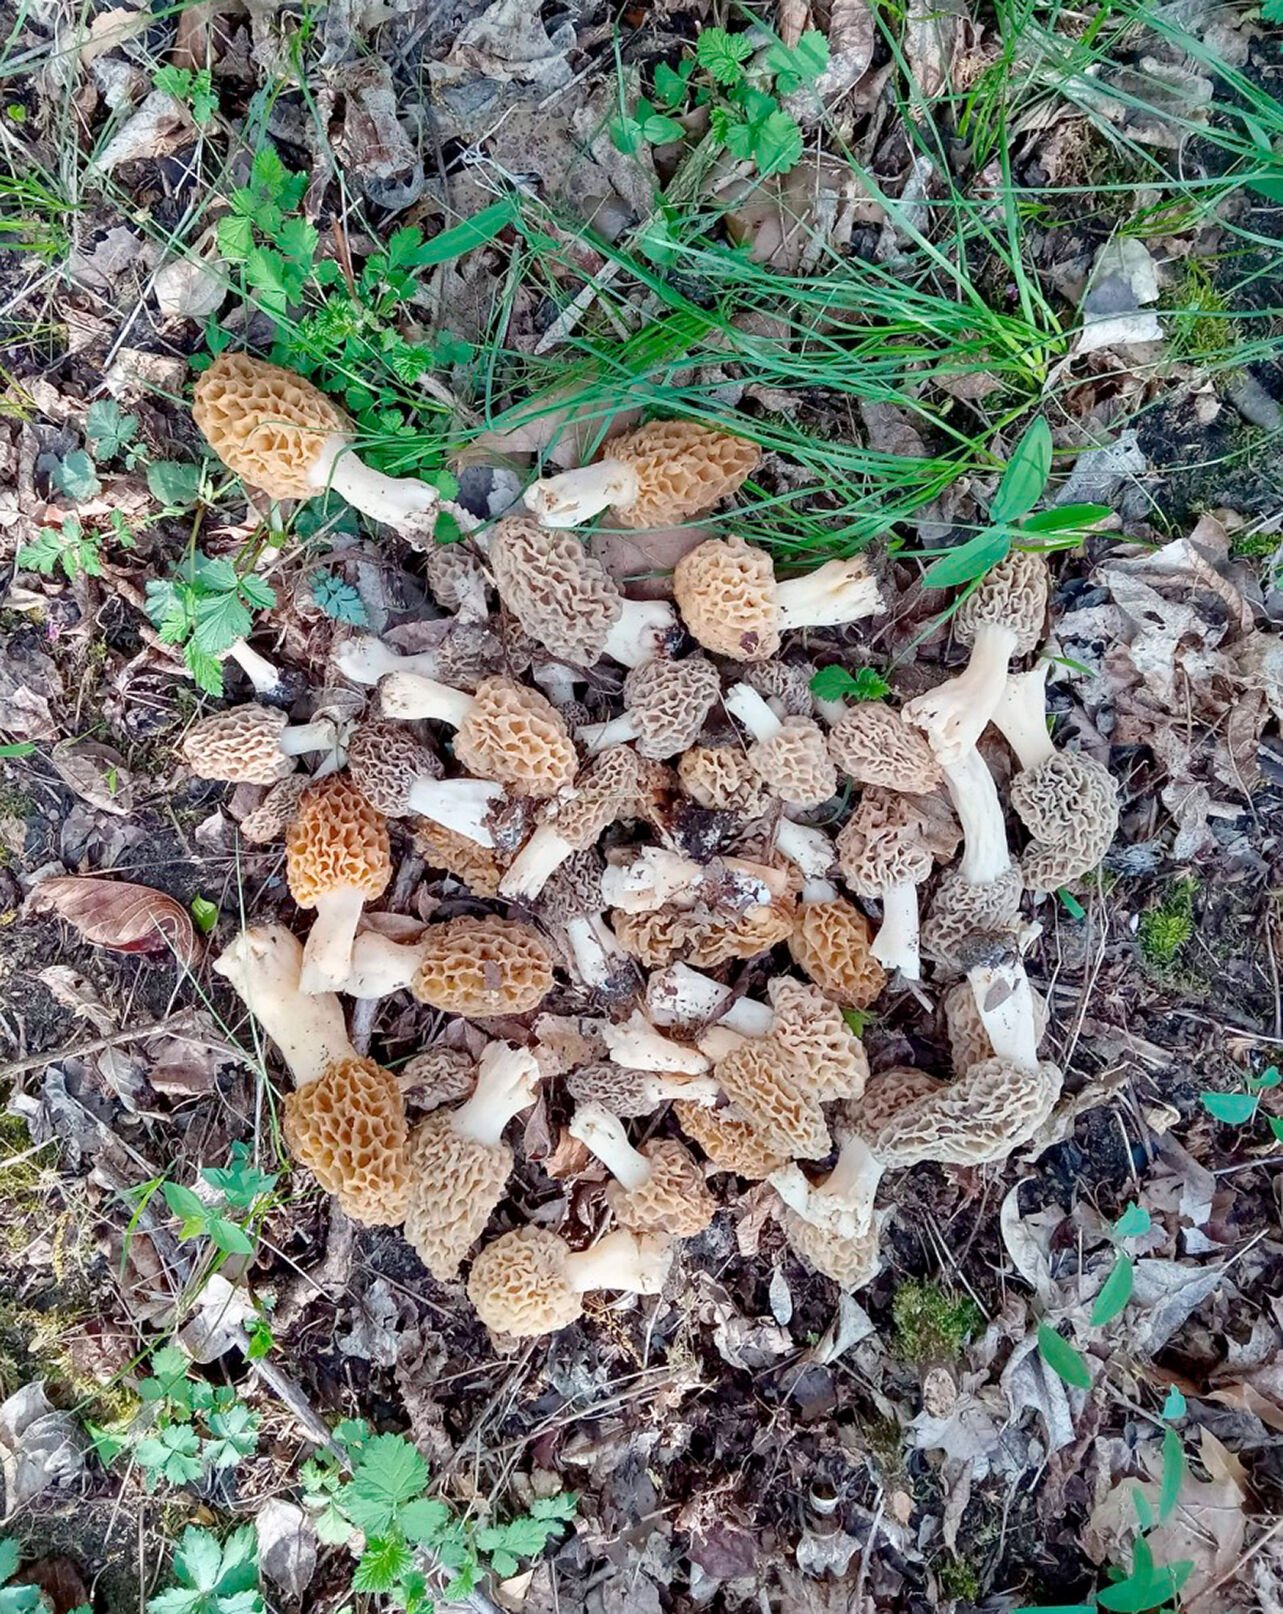 Morel mushroom hunting is in season - News ...